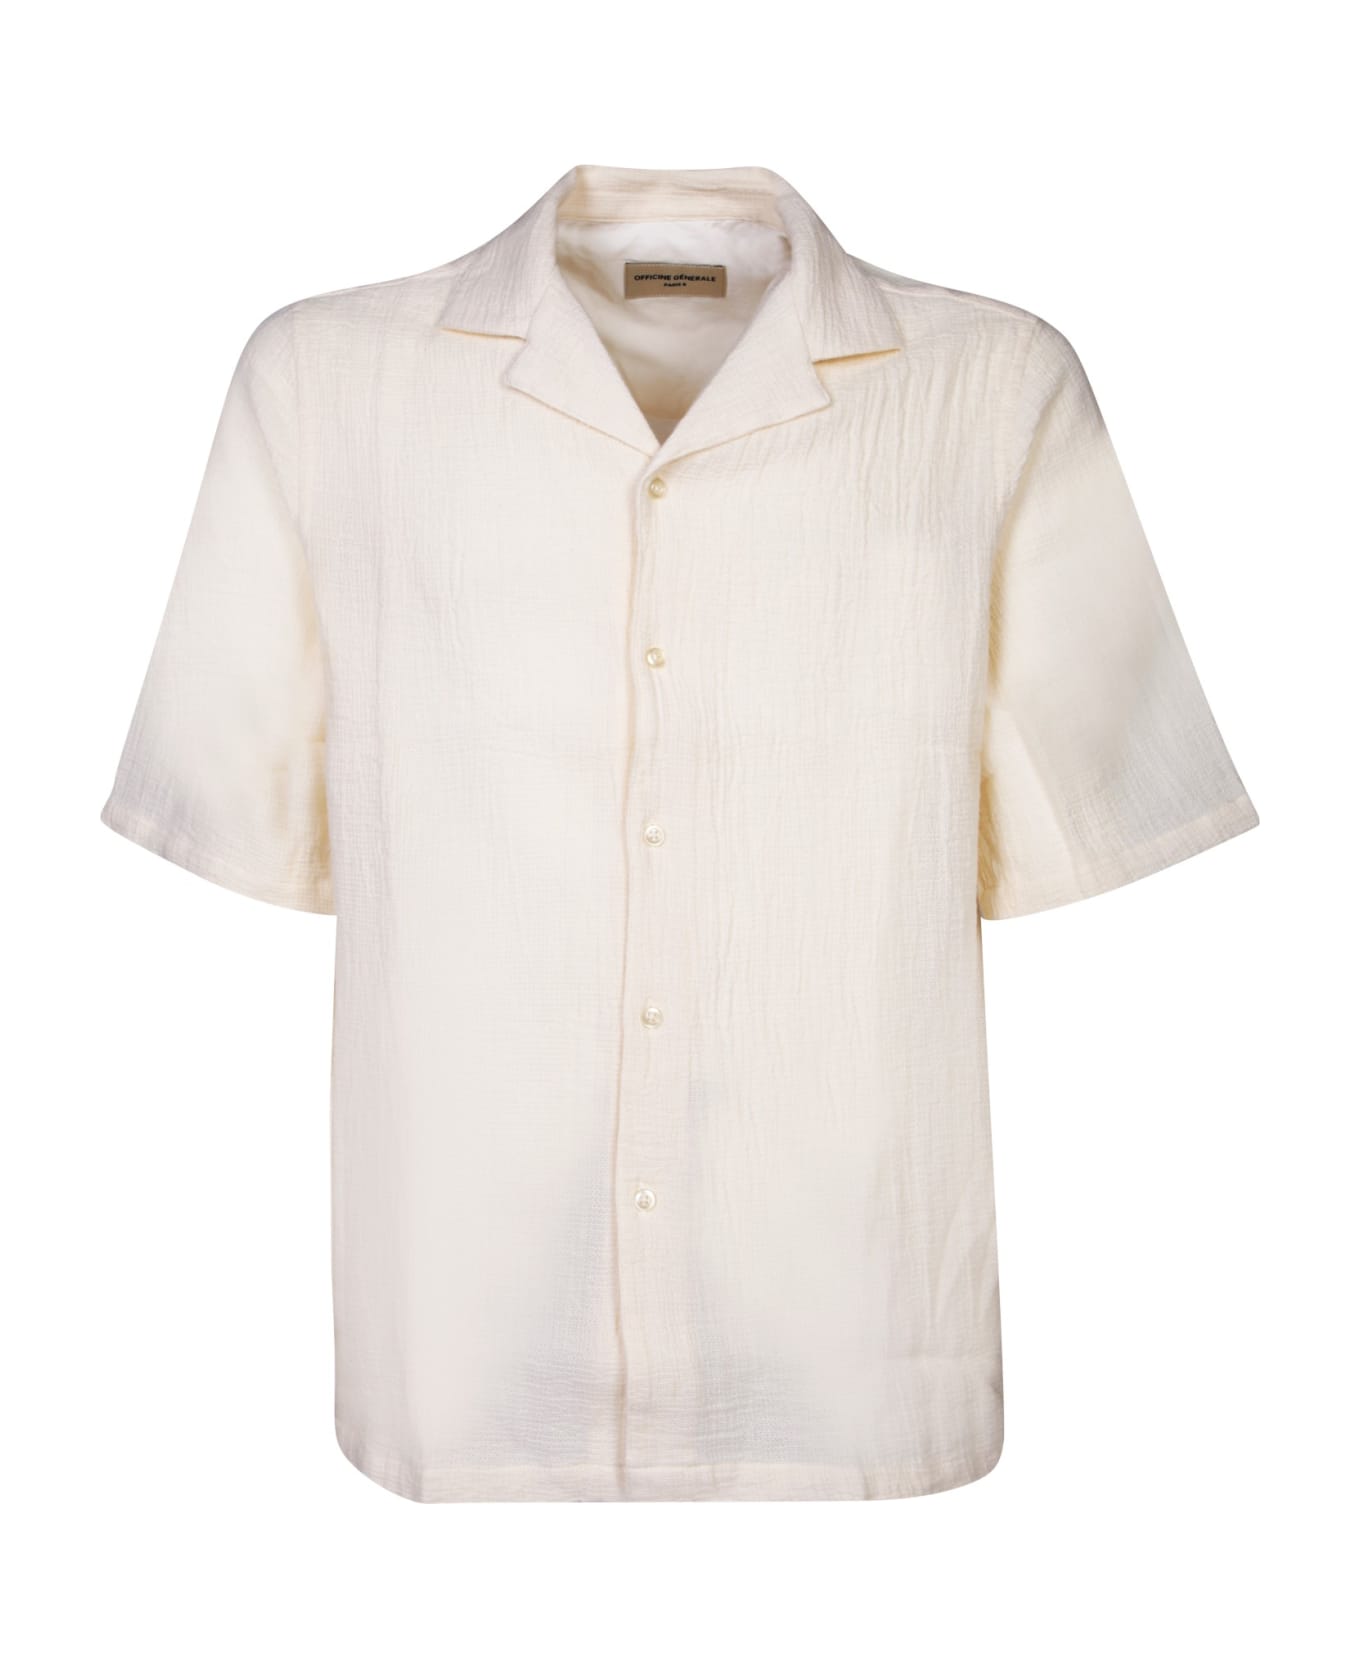 Officine Générale Short Sleeves White Shirt - White